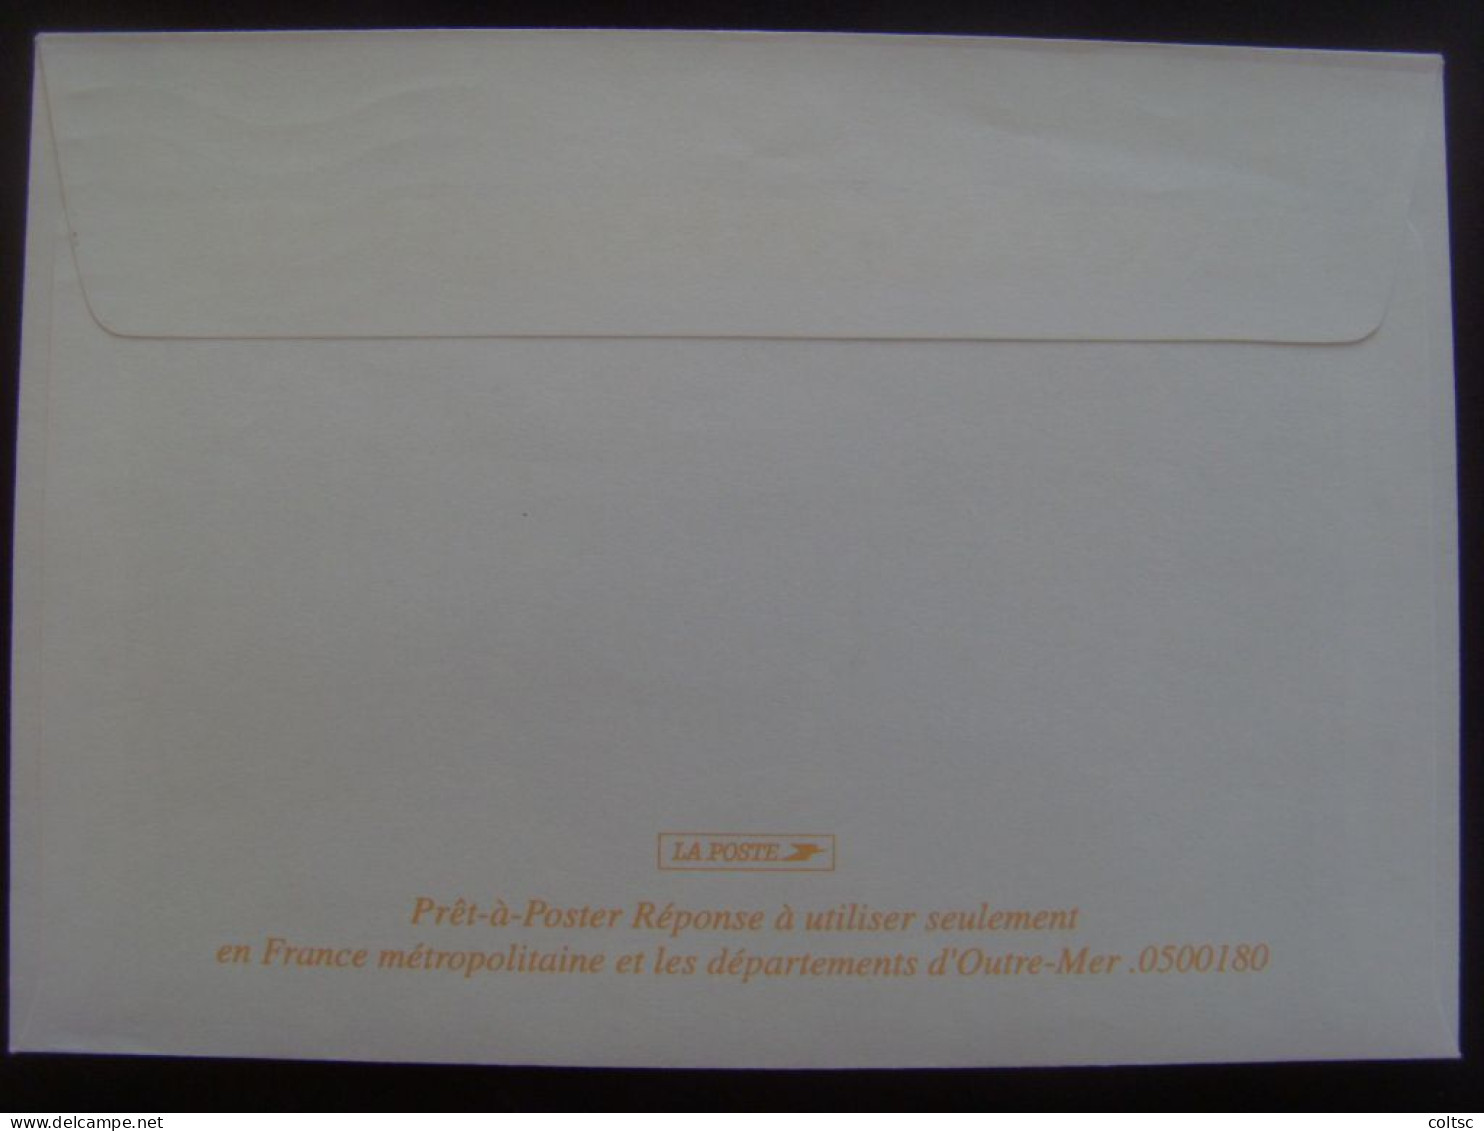 13924- PAP Réponse Lamouche ITVF Les Chiens Guides D'Aveugles De L'Ouest Validité Permanente Agr. 0500180  Obl - Prêts-à-poster: Réponse /Lamouche